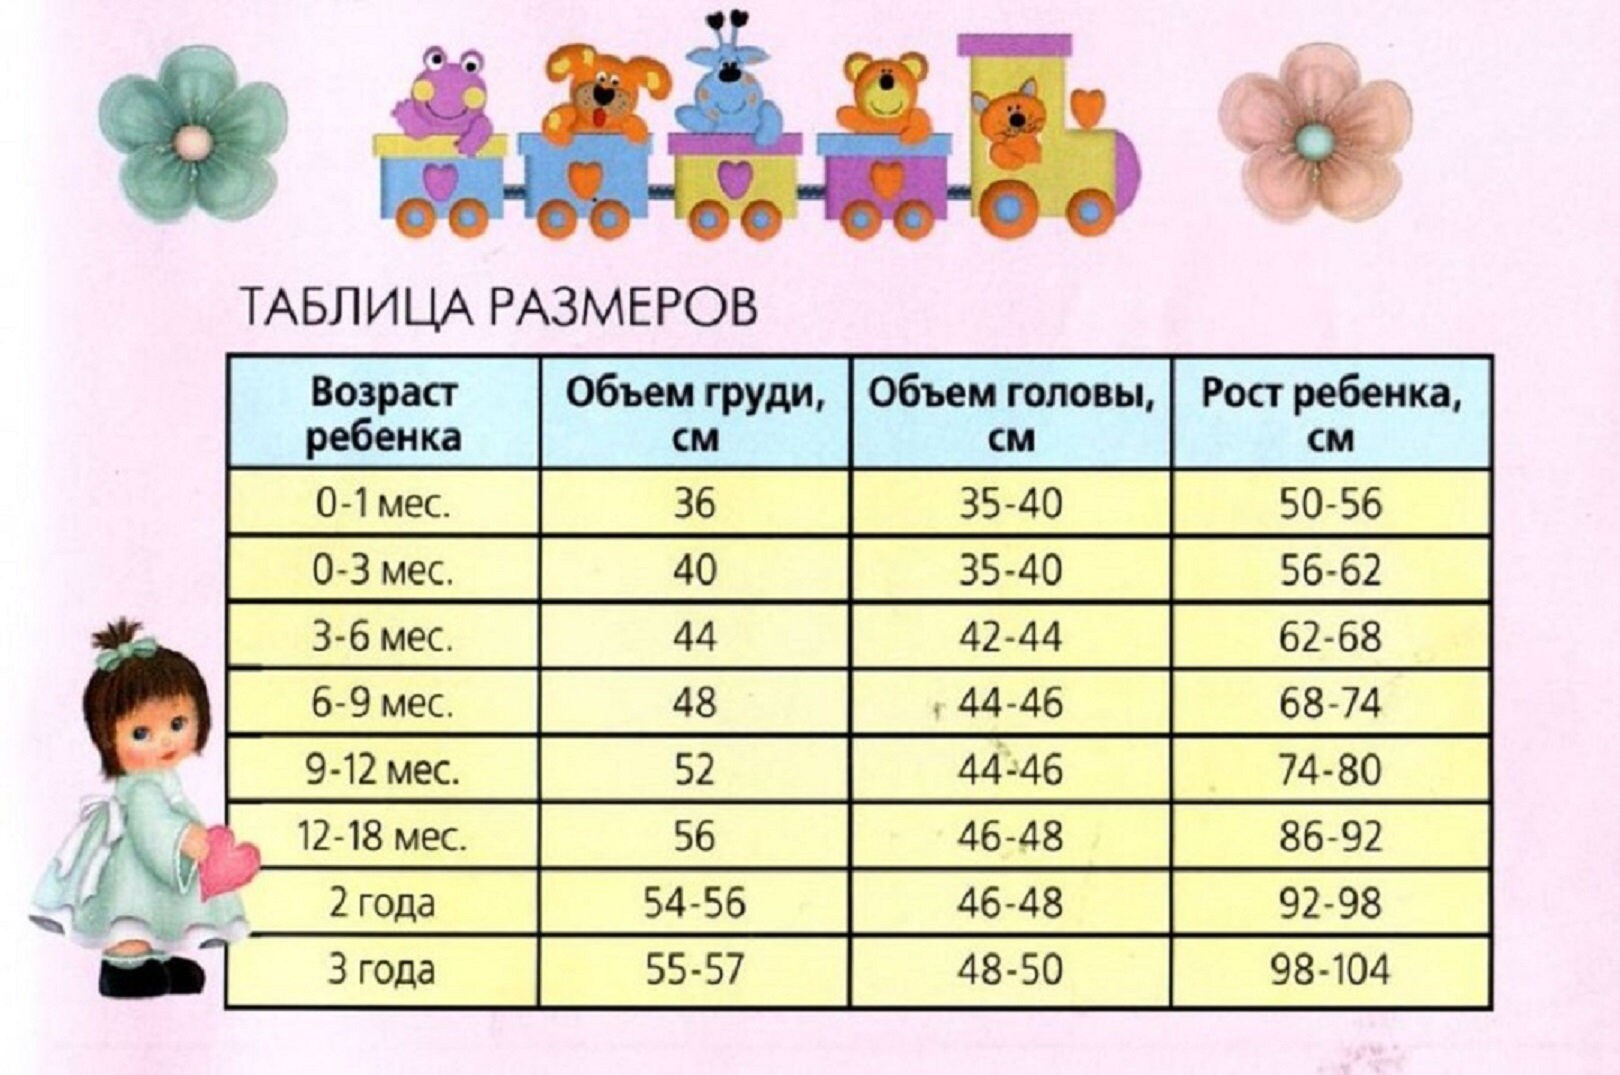 Размеры девочек по возрасту. Размерная сетка до 1 года девочке. Размеры детской одежды для малышей. Таблица размеров одежды для детей. Таблица размеров детей до года.